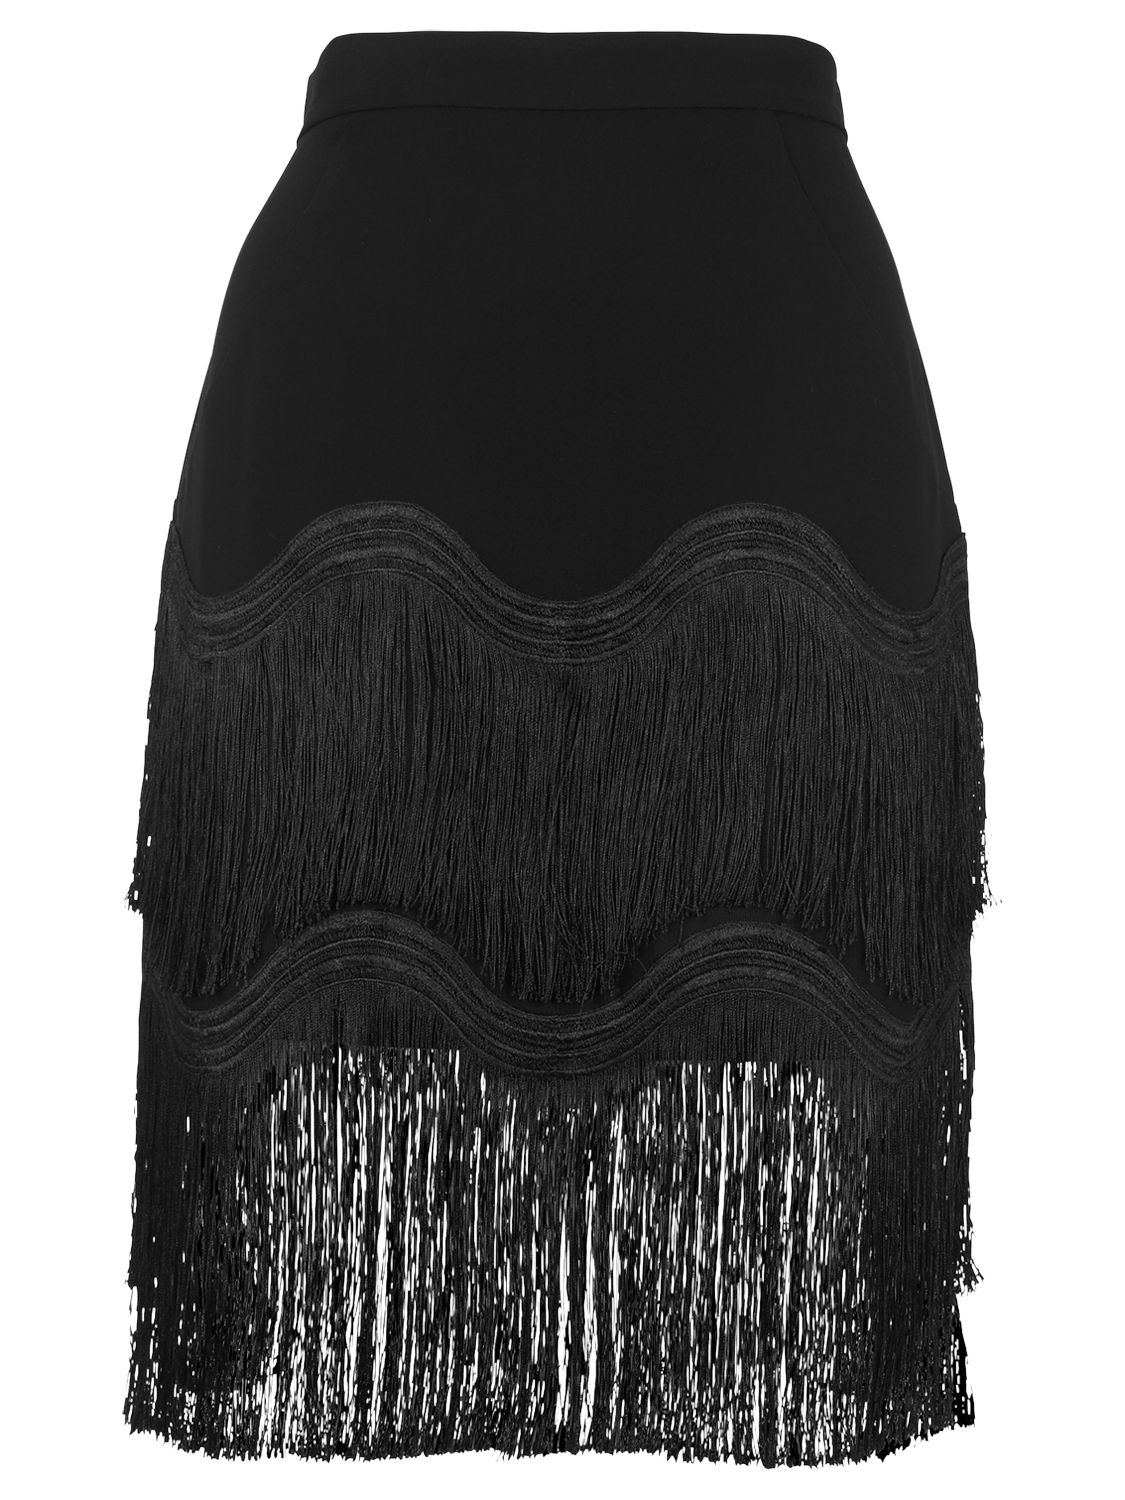 Buy Whistles Wave Tassle Skirt, Black | John Lewis